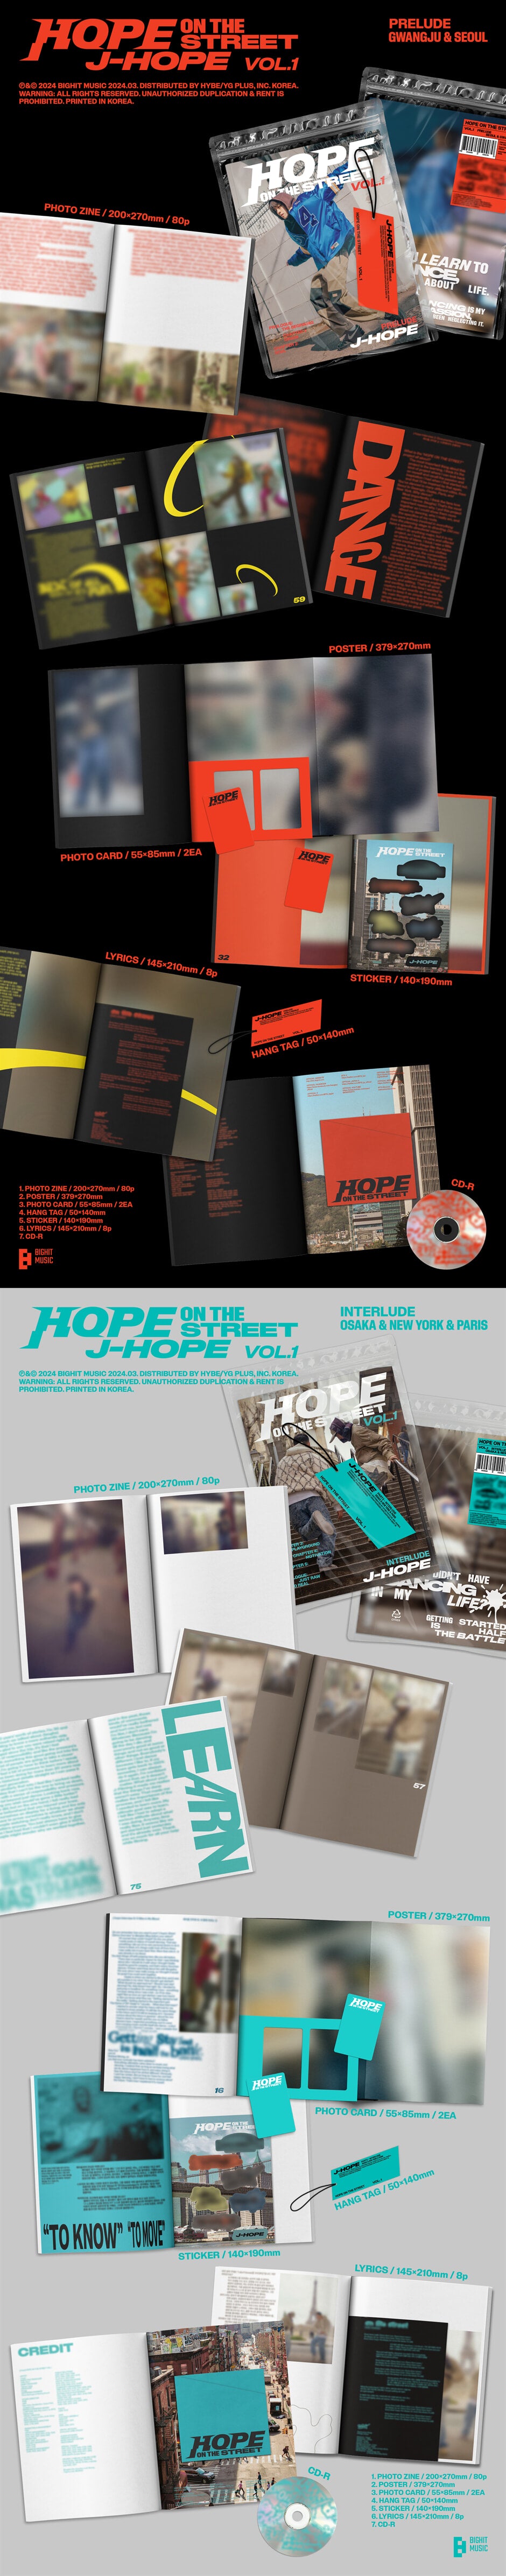 j-hope – HOPE ON THE STREET VOL.1 (Random)